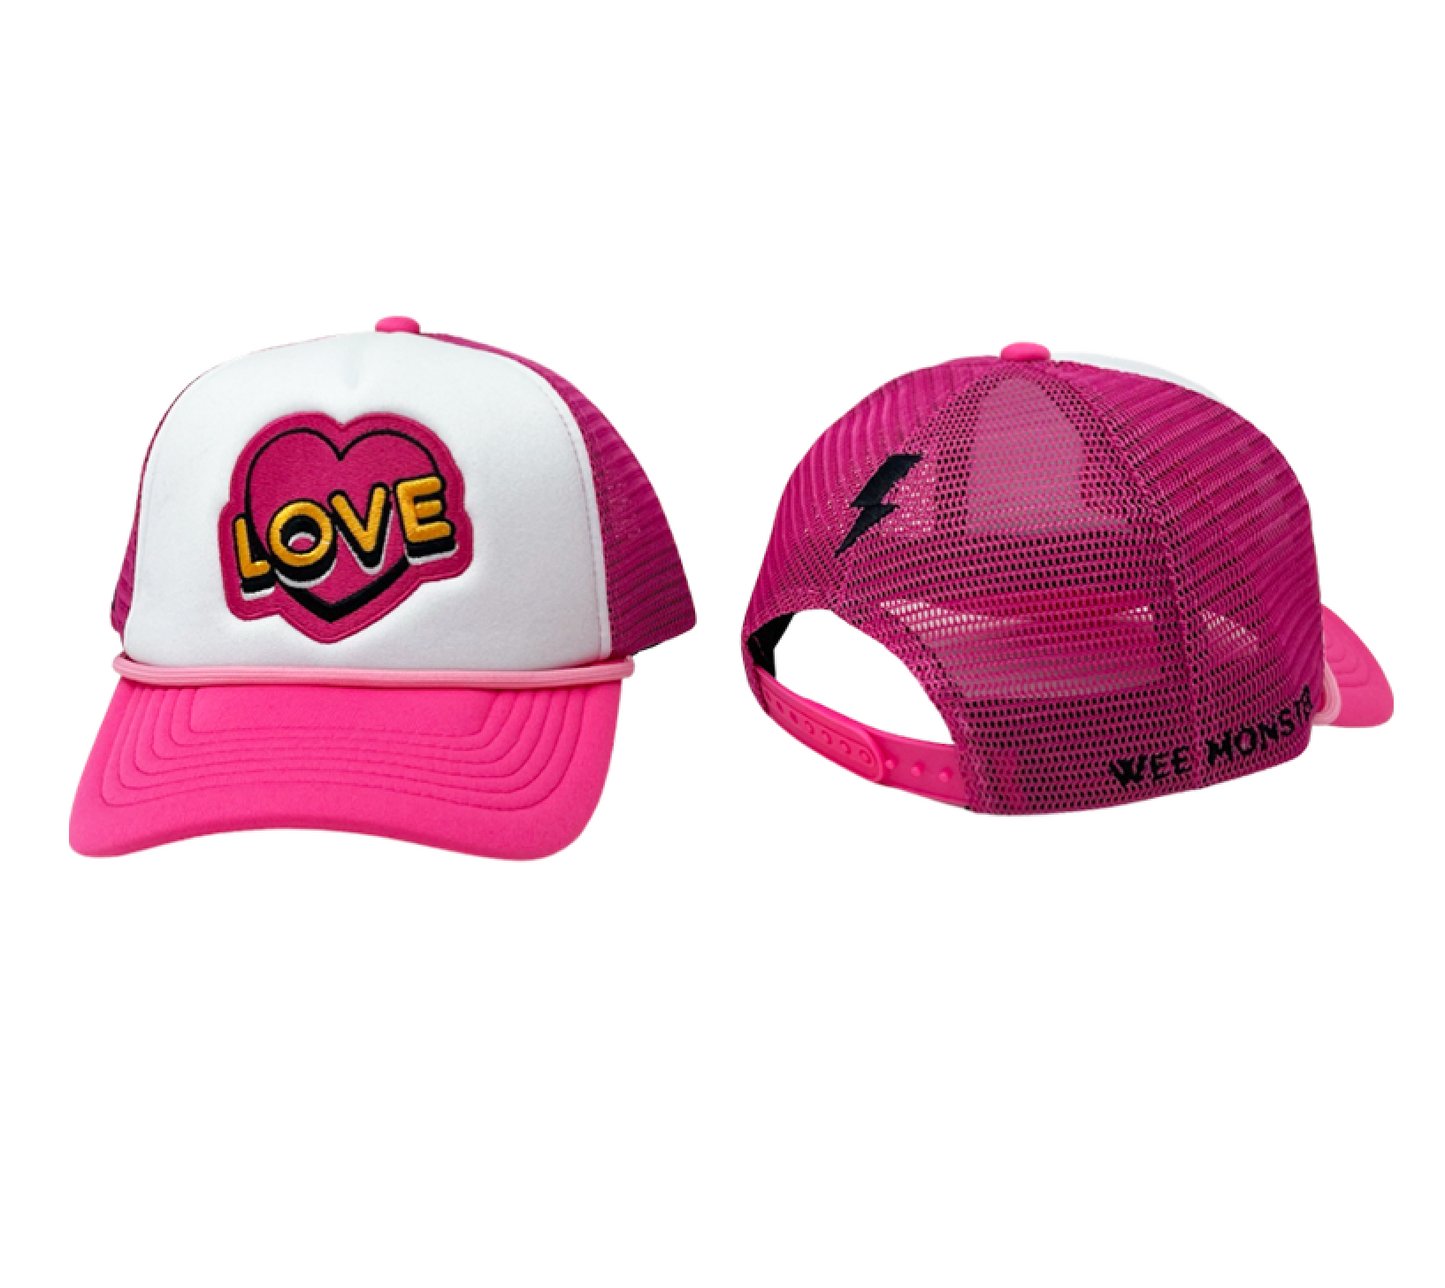 LOVE Trucker Hat - Unisex for Boys and Girls